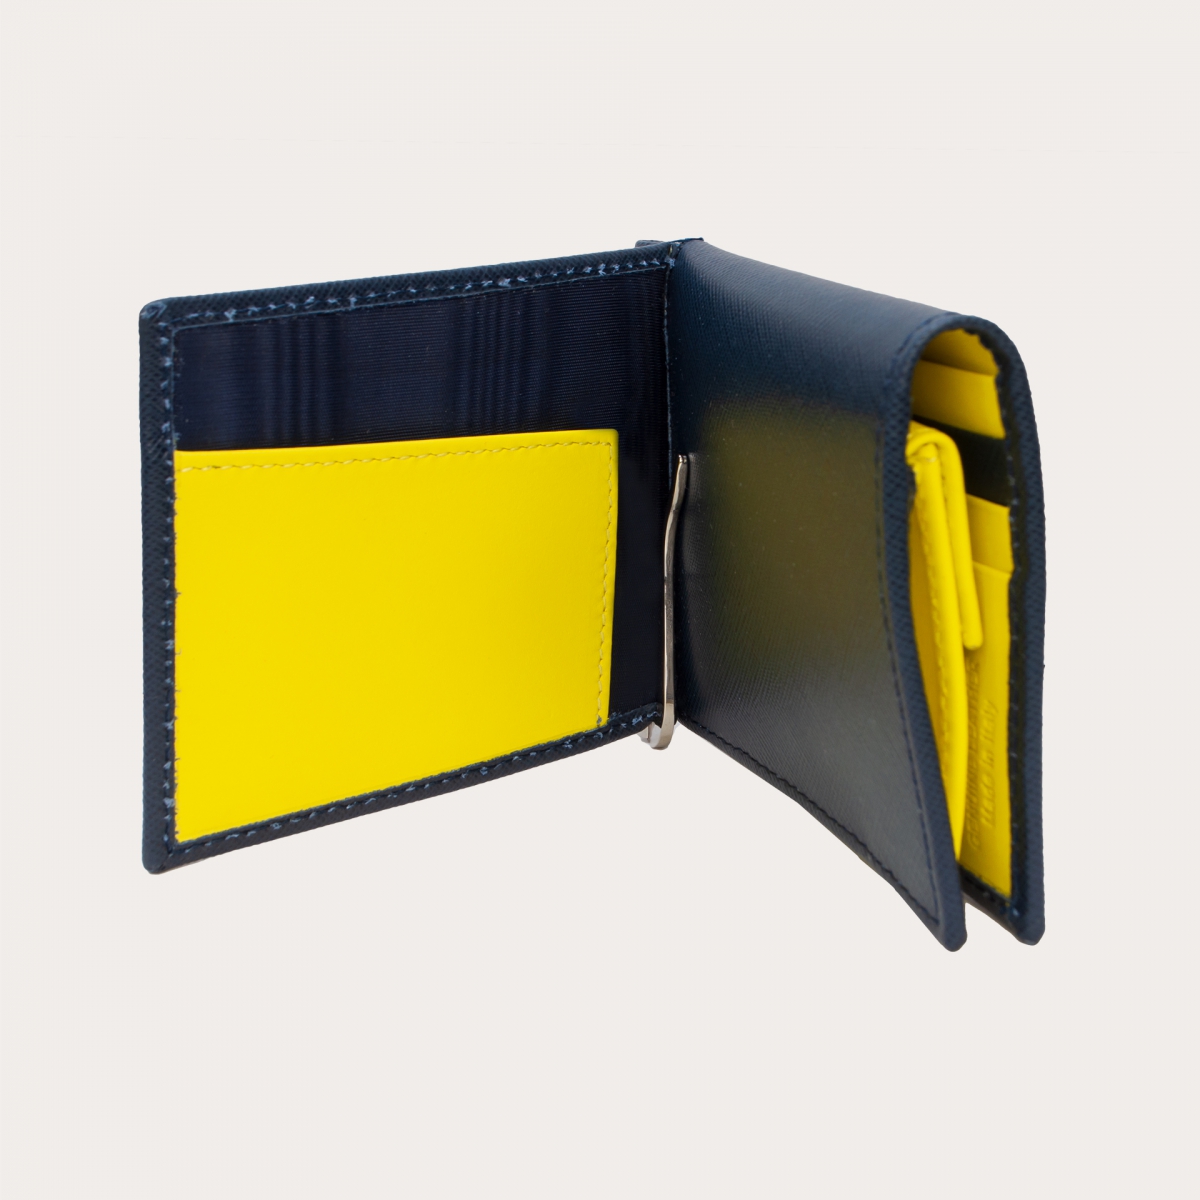 BRUCLE Kompakte Mini-Geldbörse aus Saffiano-Leder mit Geldscheinklammer und Geldbörse, blau und gelb